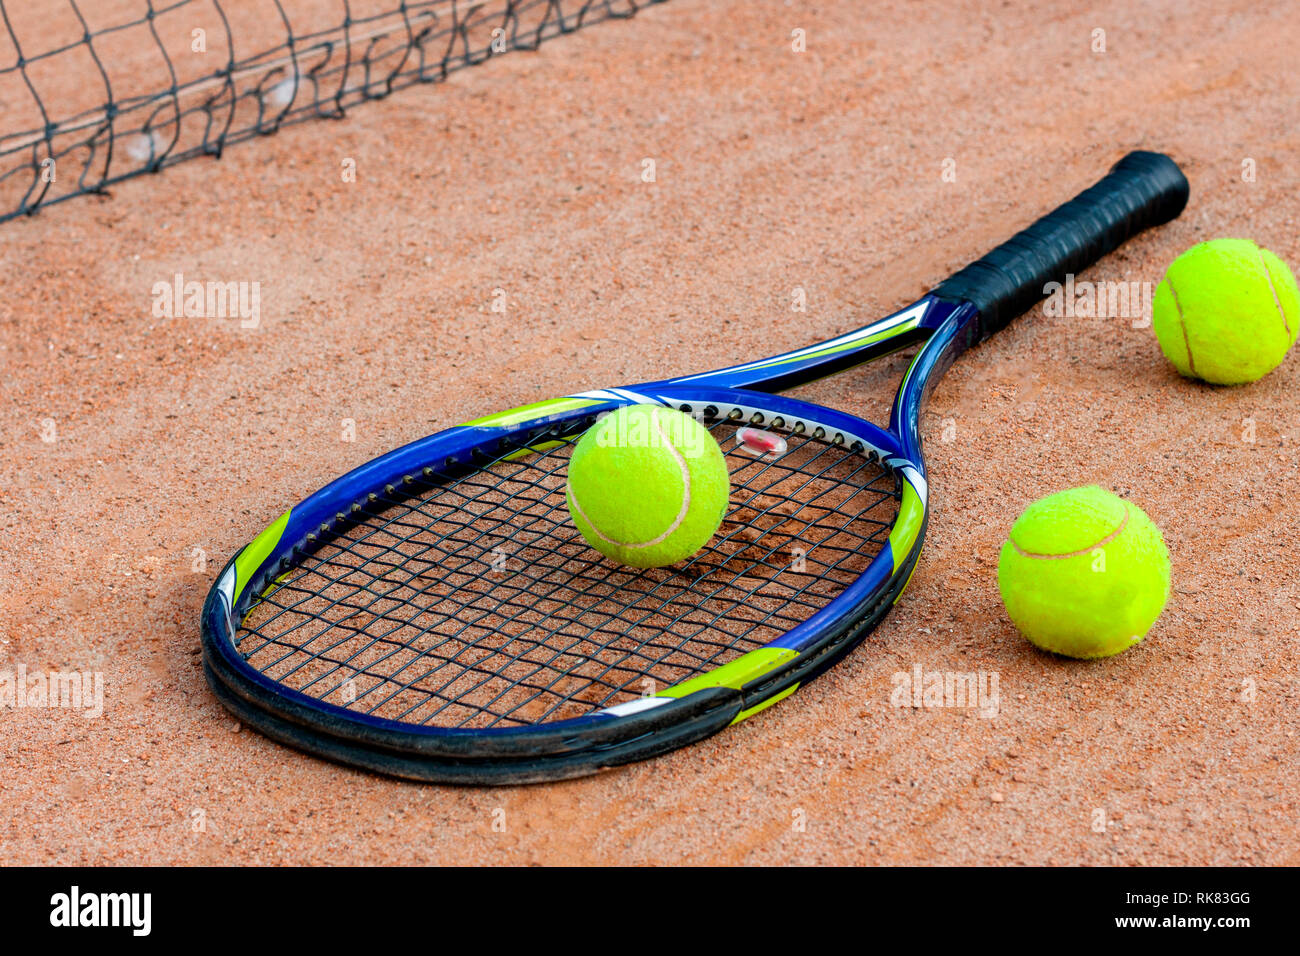 Sur le court de tennis est une raquette de tennis avec des balles de tennis  Photo Stock - Alamy